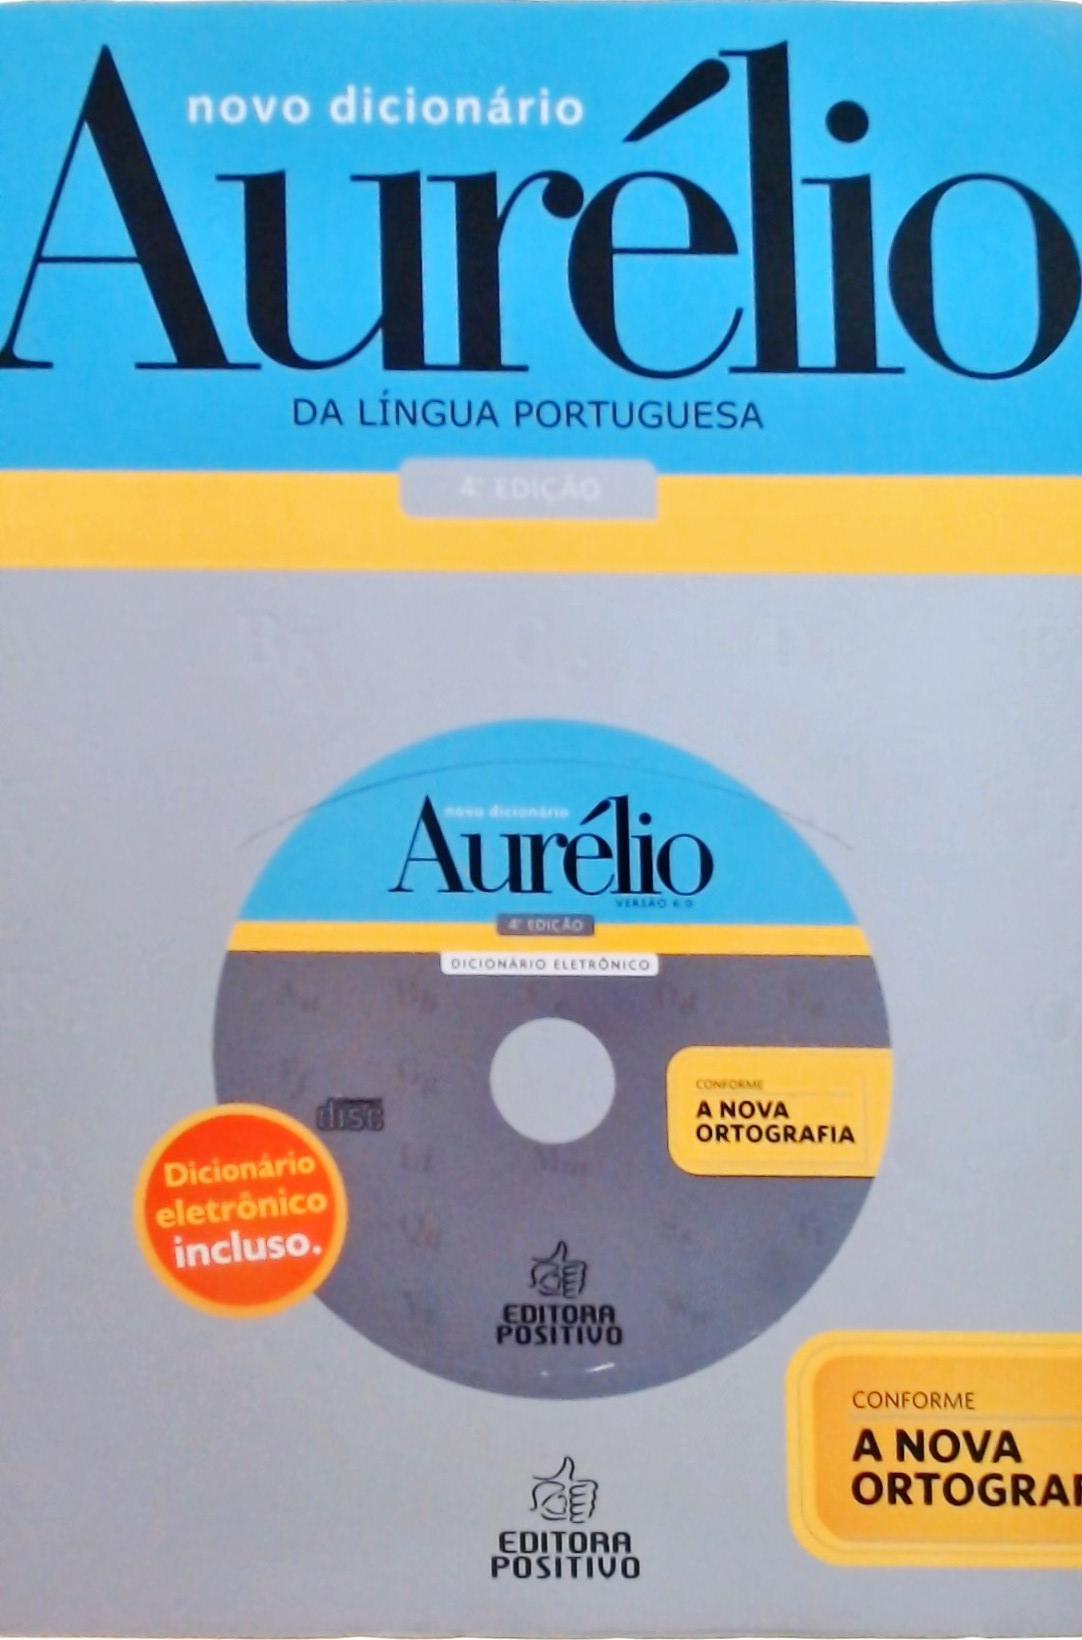 Novo Dicionário Aurélio Da Língua Portuguesa - 2009 sem CD